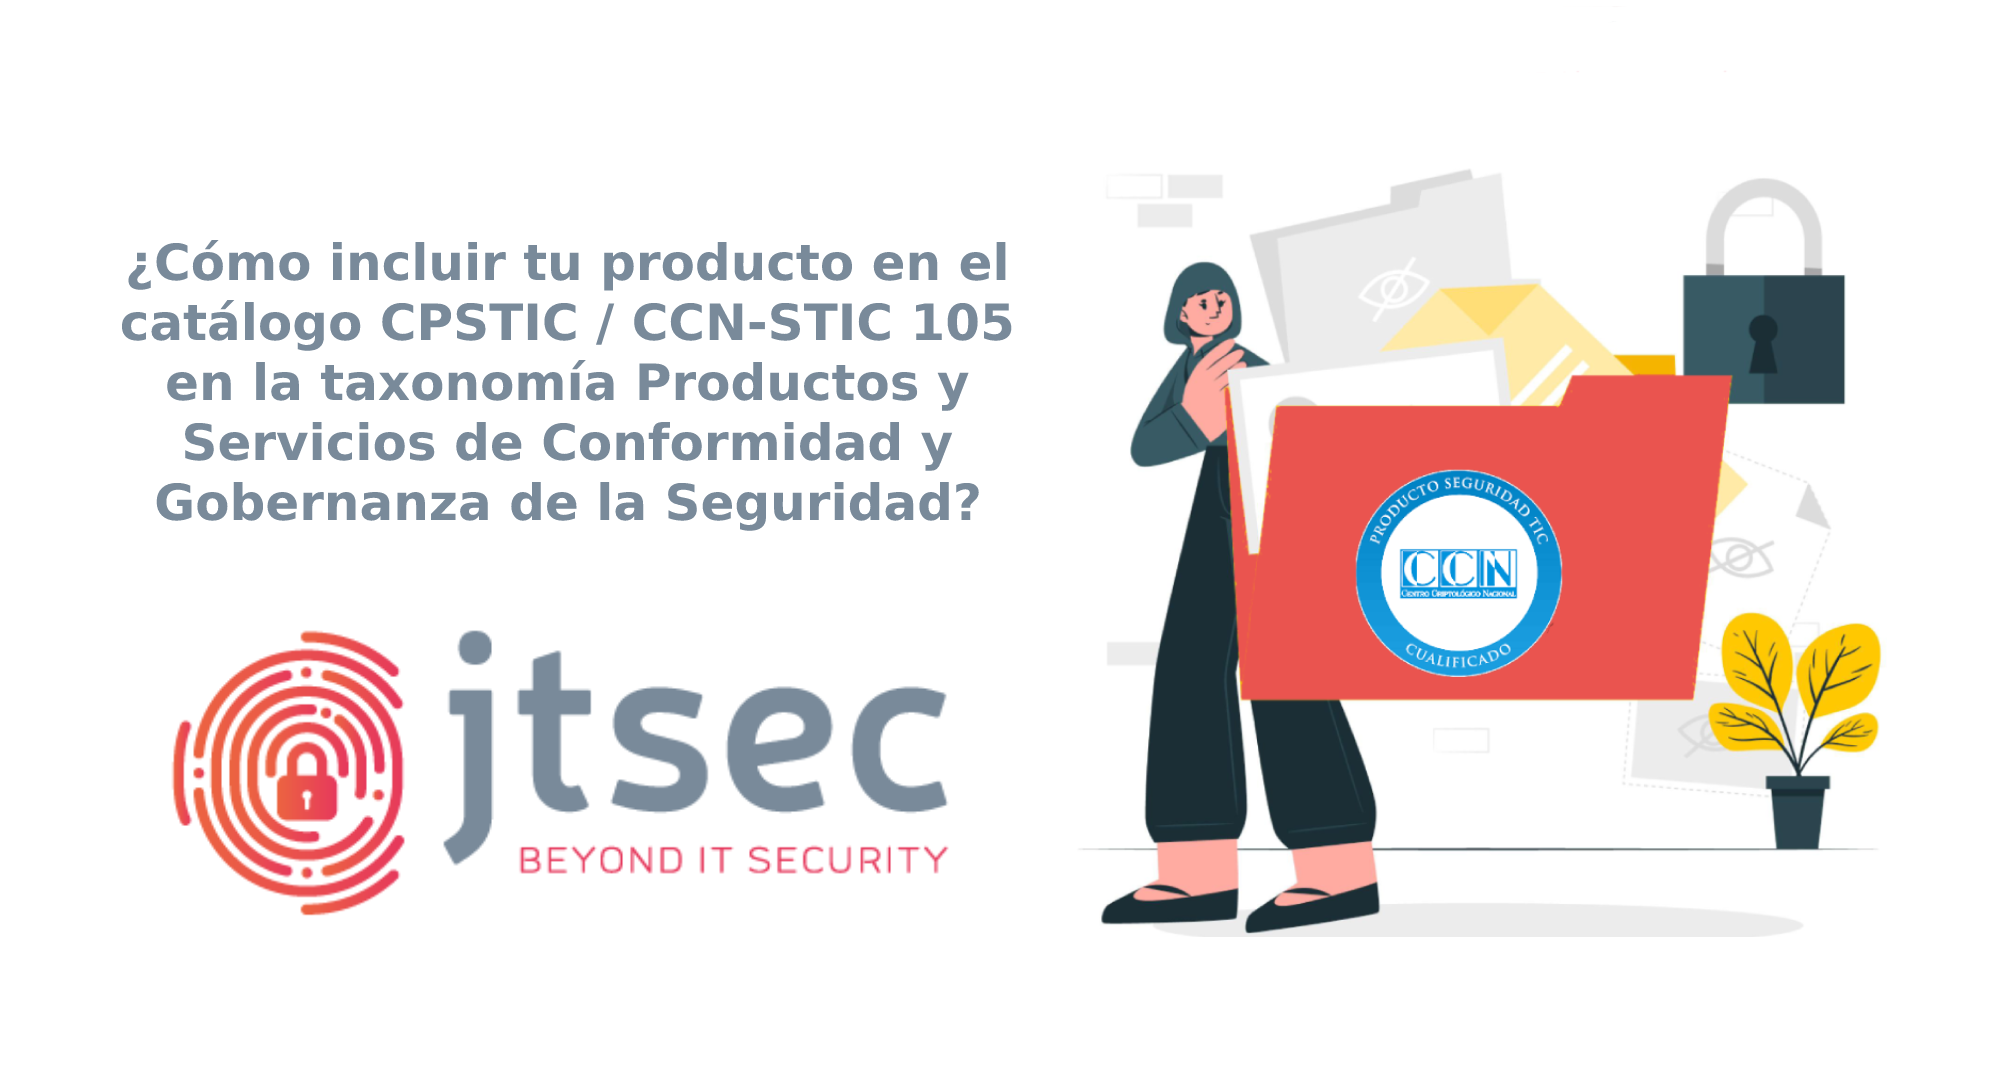 ¿Cómo incluir tu producto en el catálogo CPSTIC / CCN-STIC 105 en la taxonomía Productos y Servicios de Conformidad y Gobernanza de la Seguridad? 